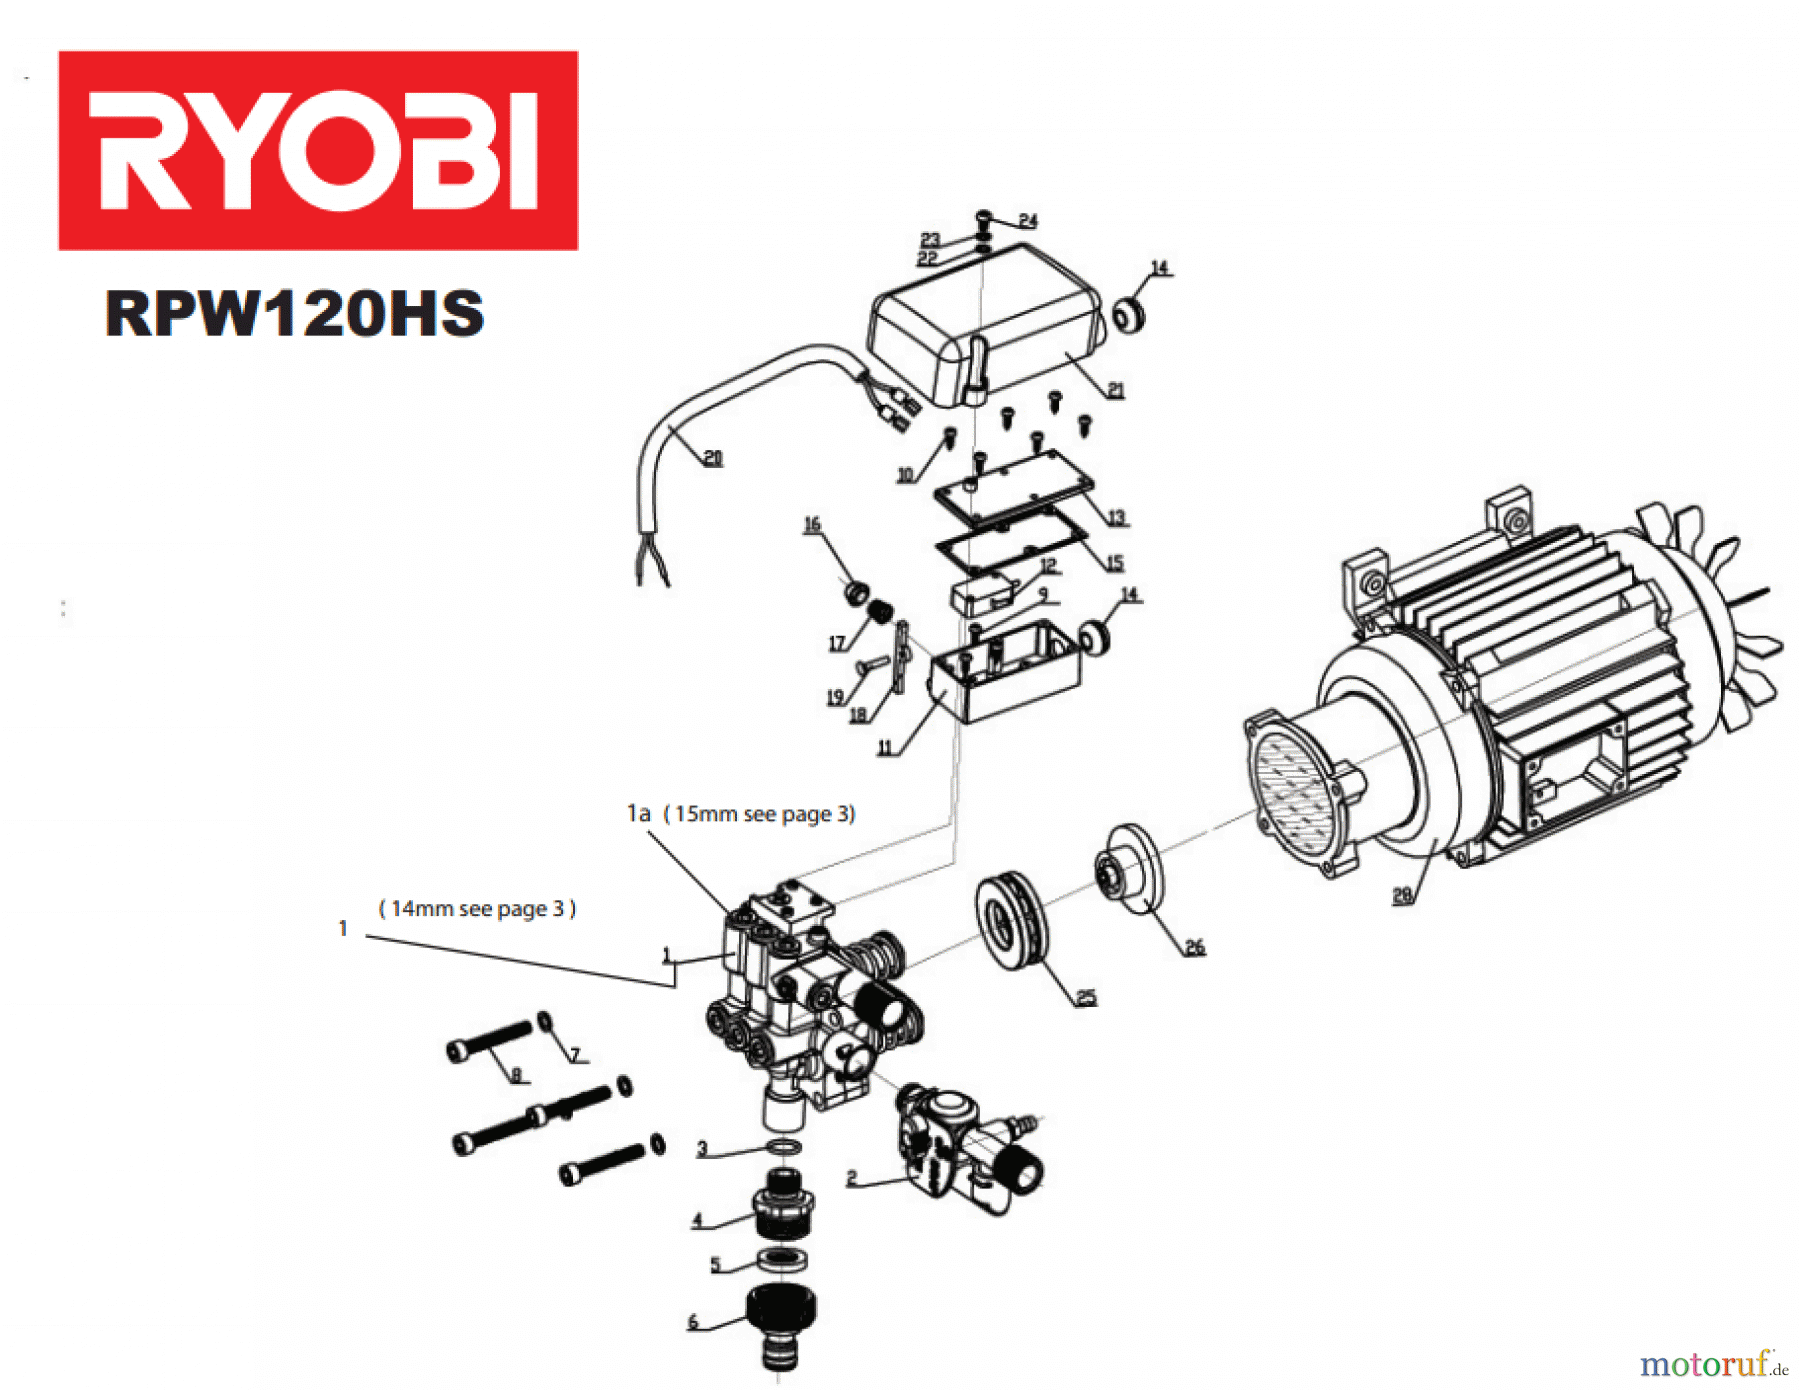  Ryobi Hochdruckreiniger RPW120HS Seite 1